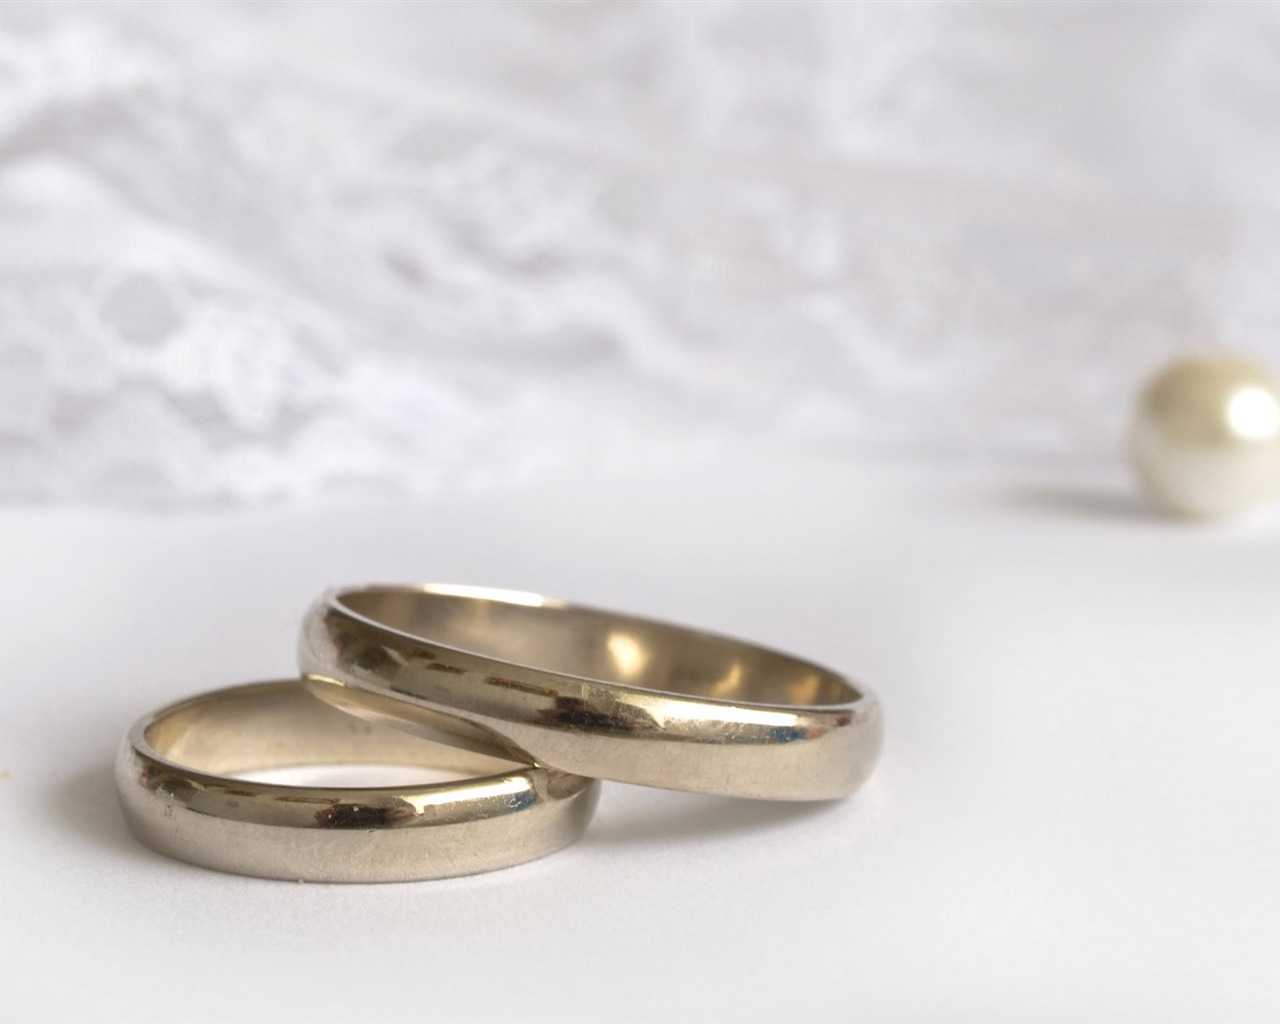 Mariage et papier peint anneau de mariage (2) #3 - 1280x1024